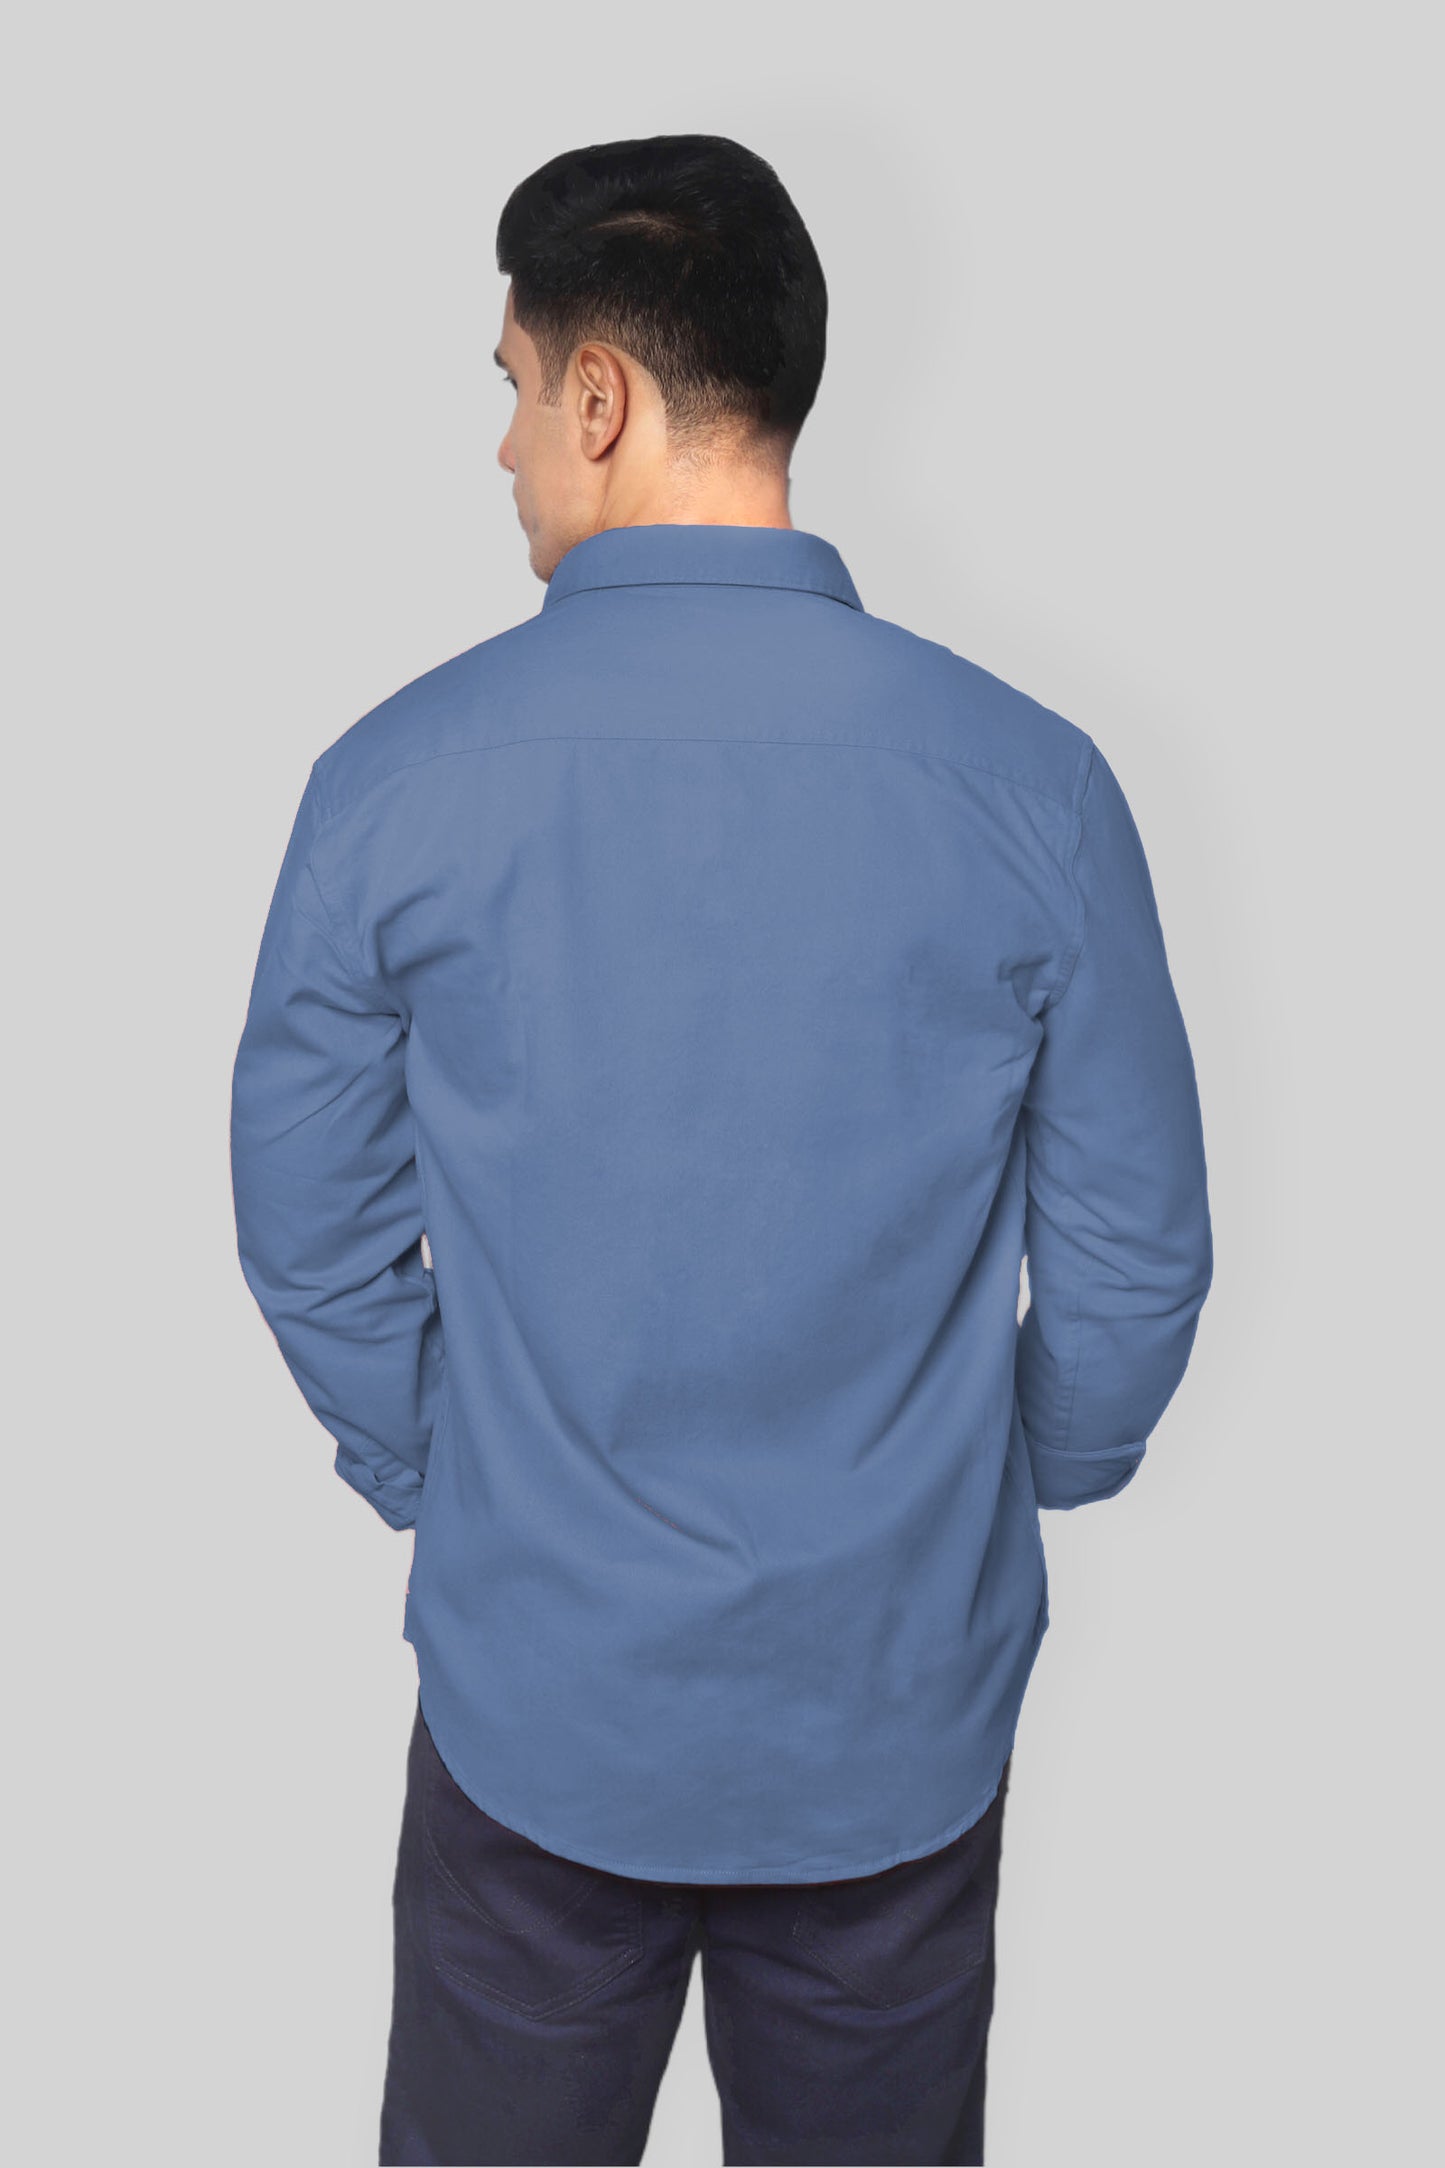 Blue double pocket denim shirt for men’s